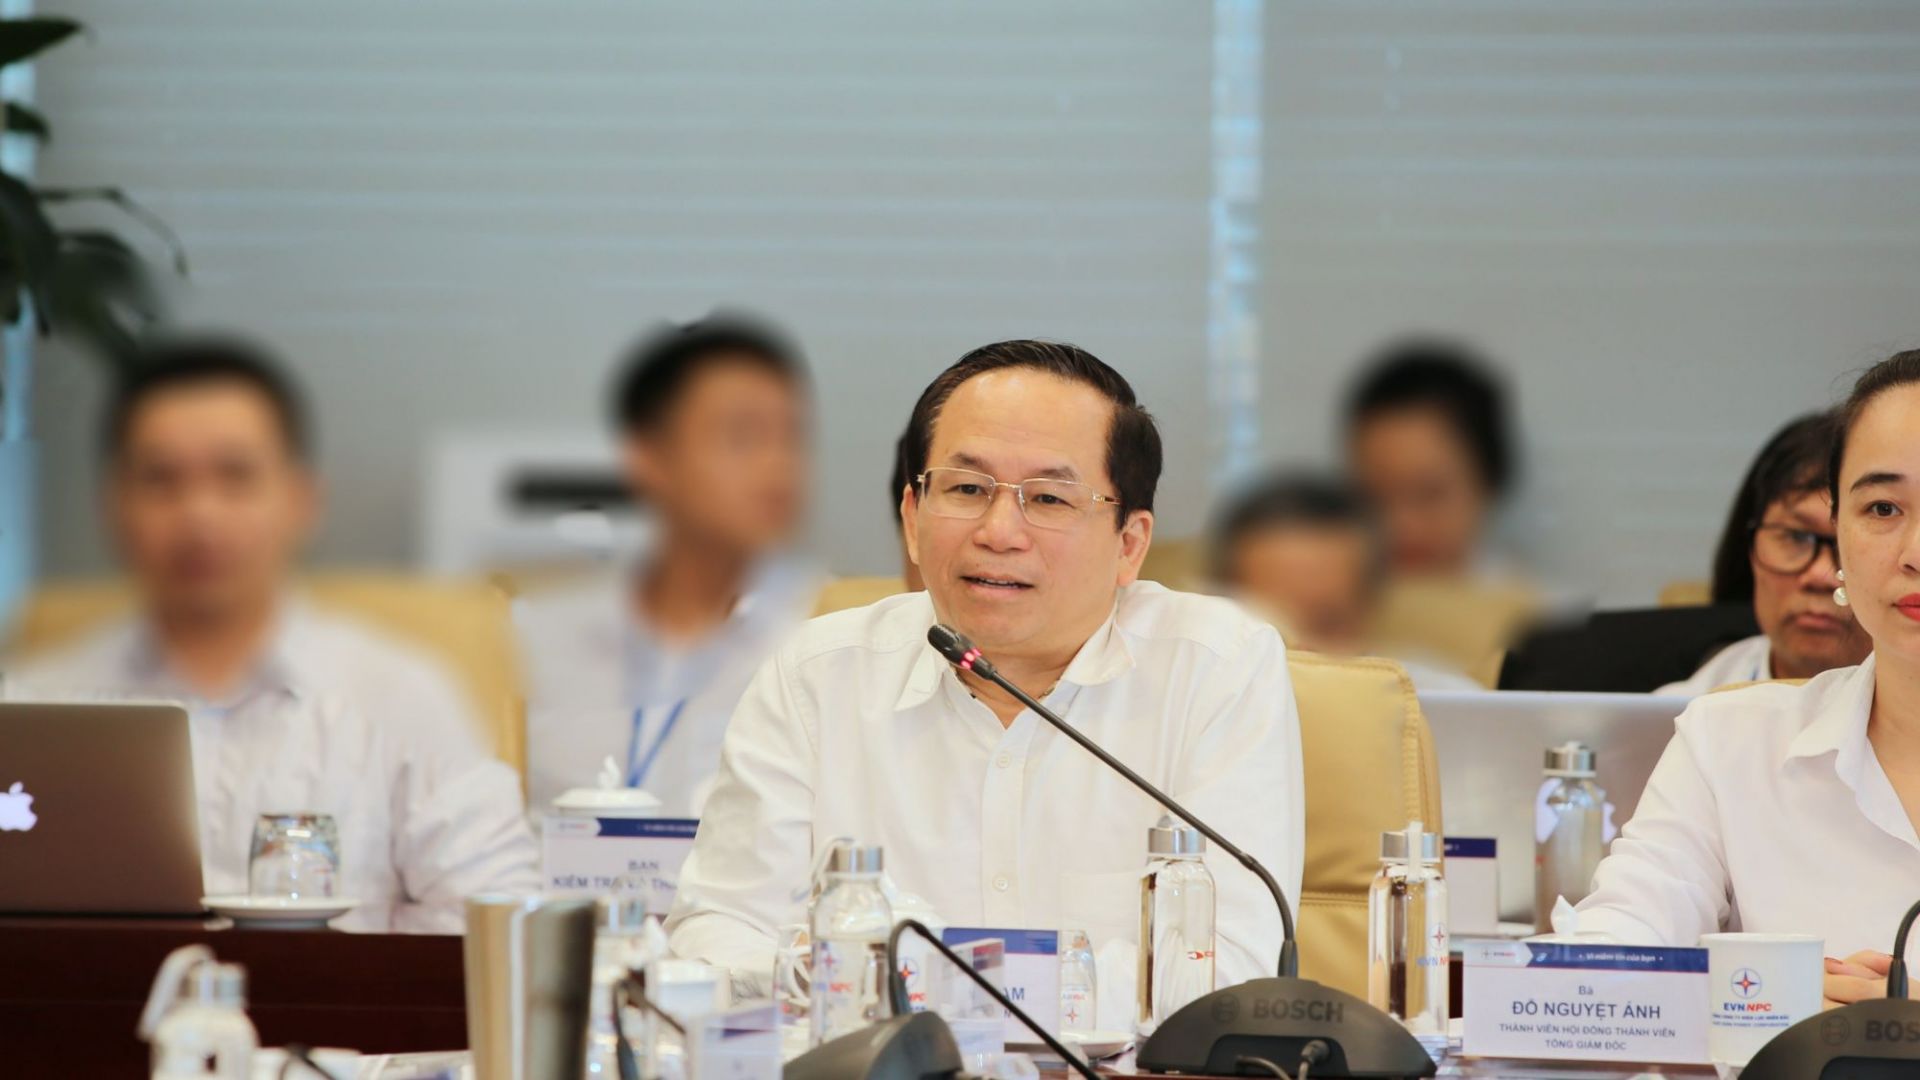 Ông Nguyễn Xuân Nam - Phó Tổng Giám đốc Tập đoàn Điện lực Việt Nam (EVN) phát biểu tại buổi họp